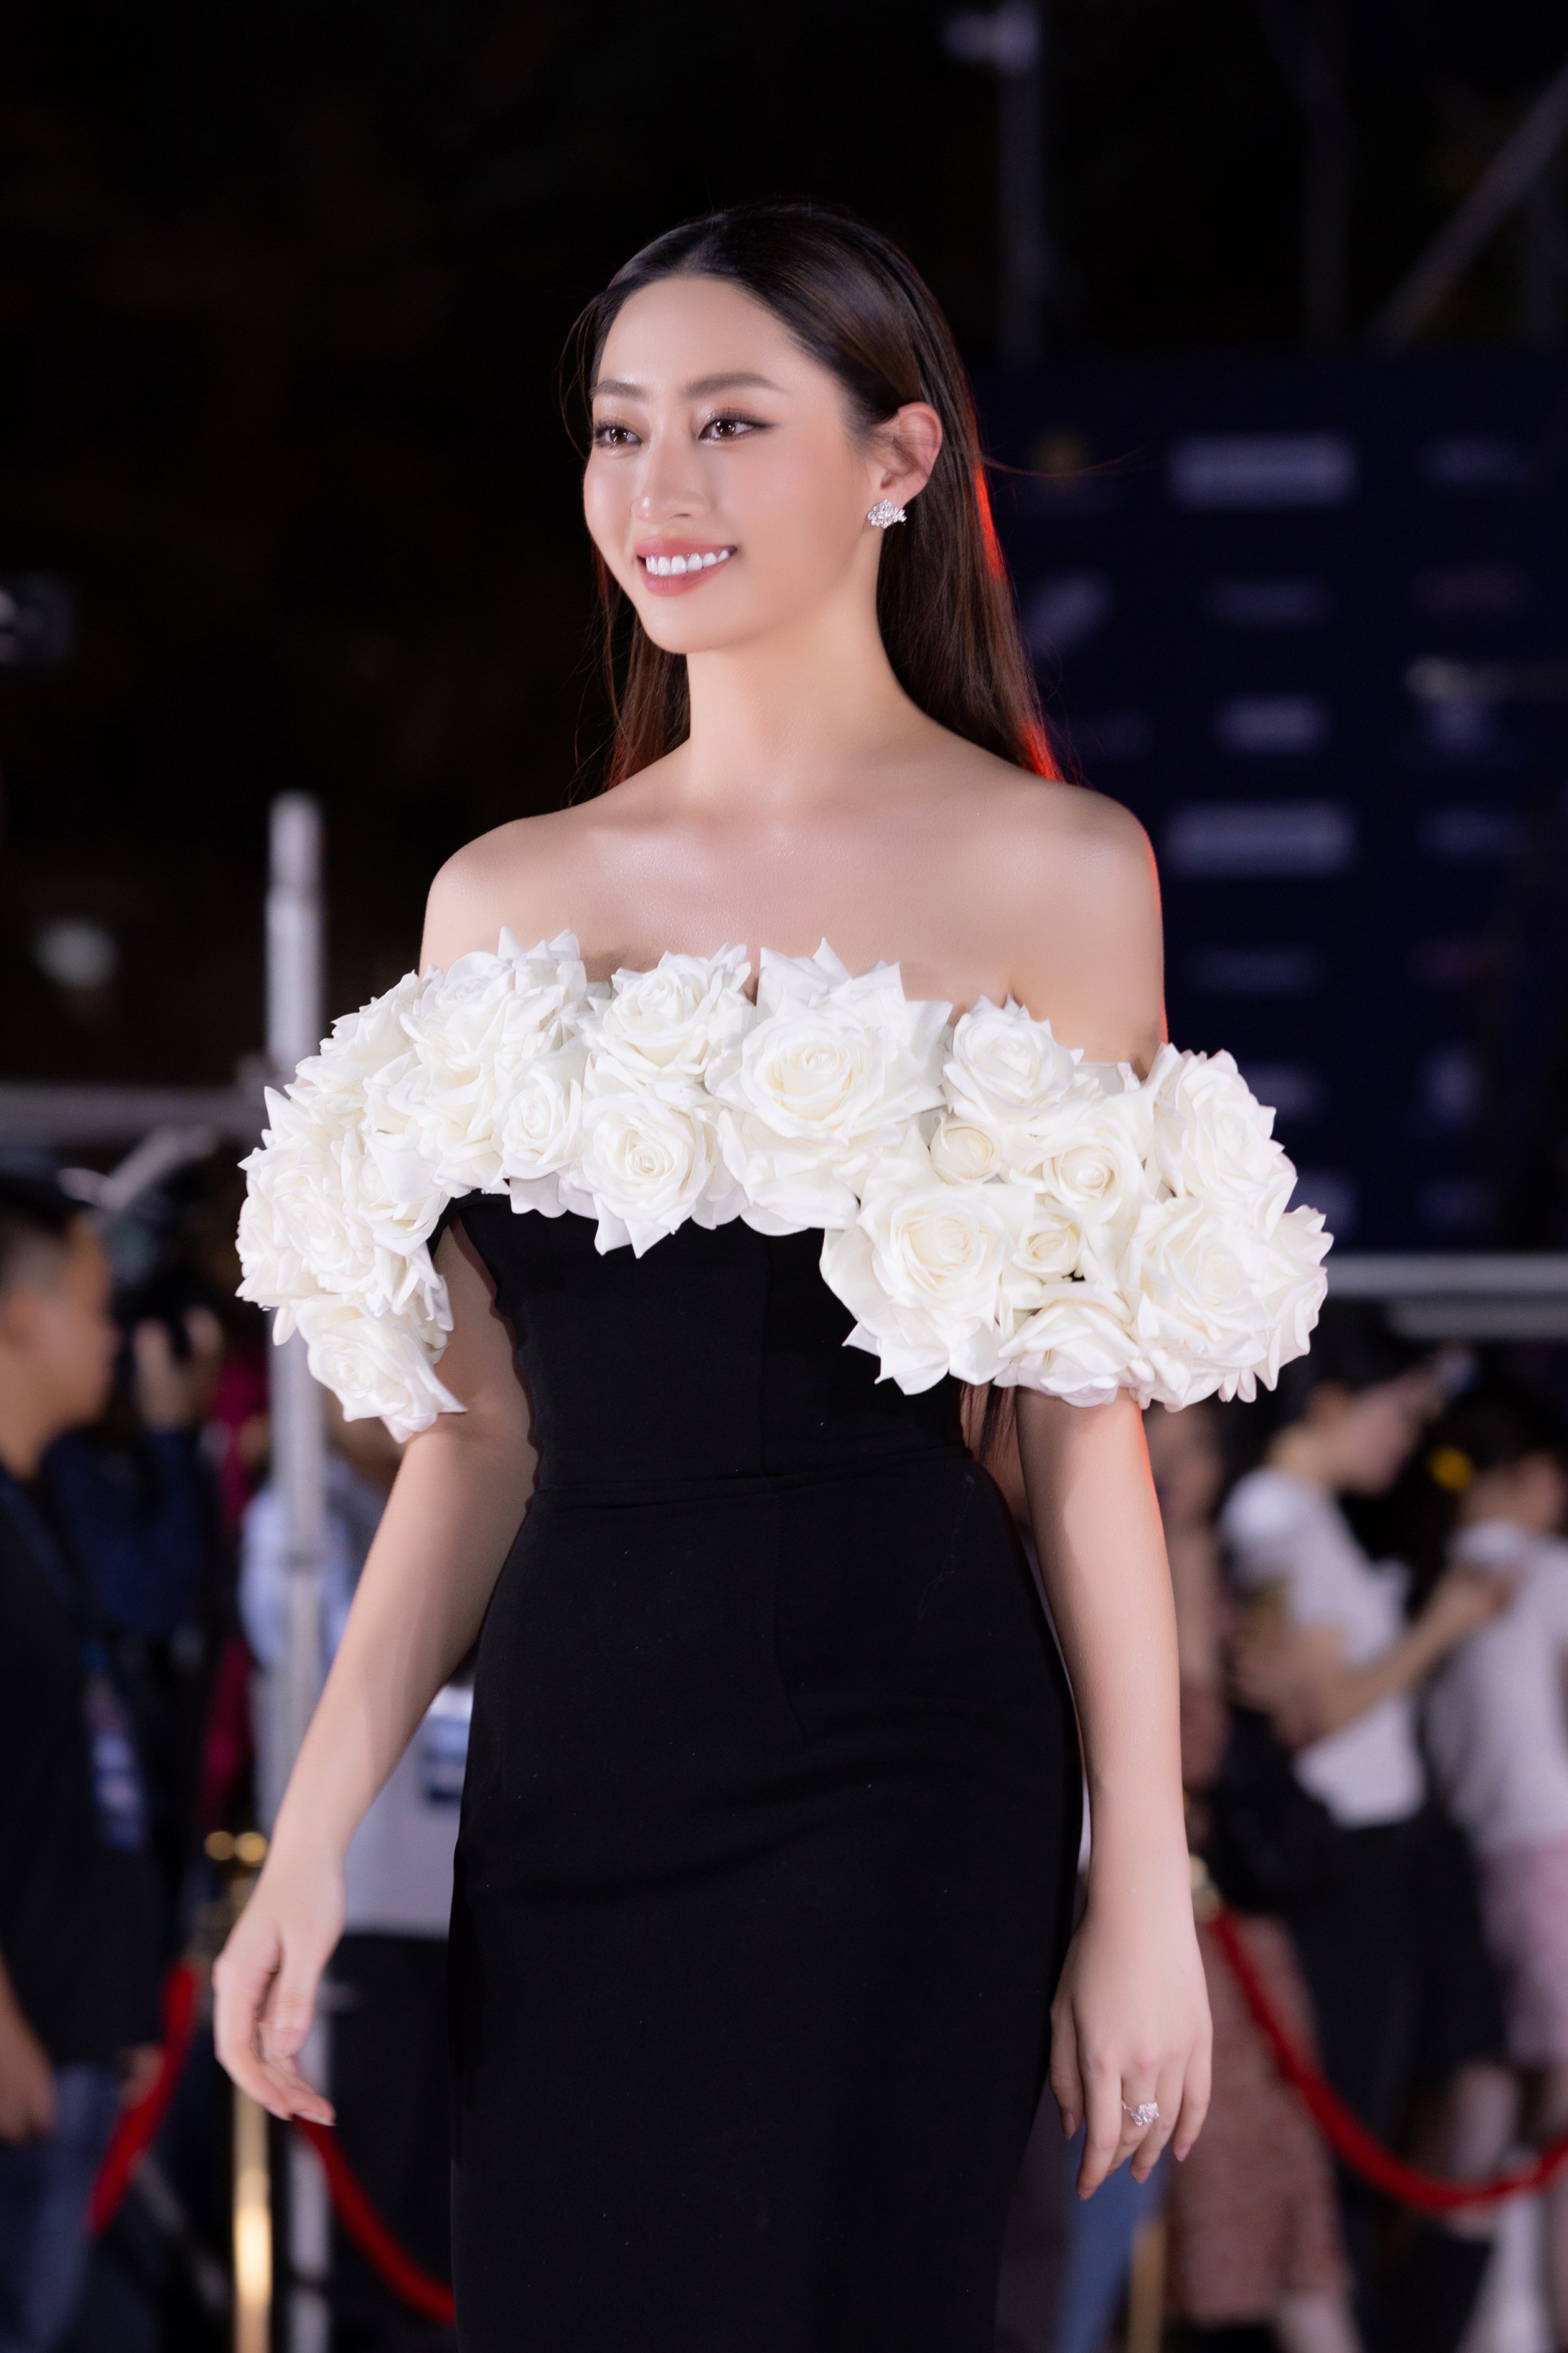 Hoa hậu rạng ngời trên thảm đỏ Liên hoan phim quốc tế TPHCM ảnh 7